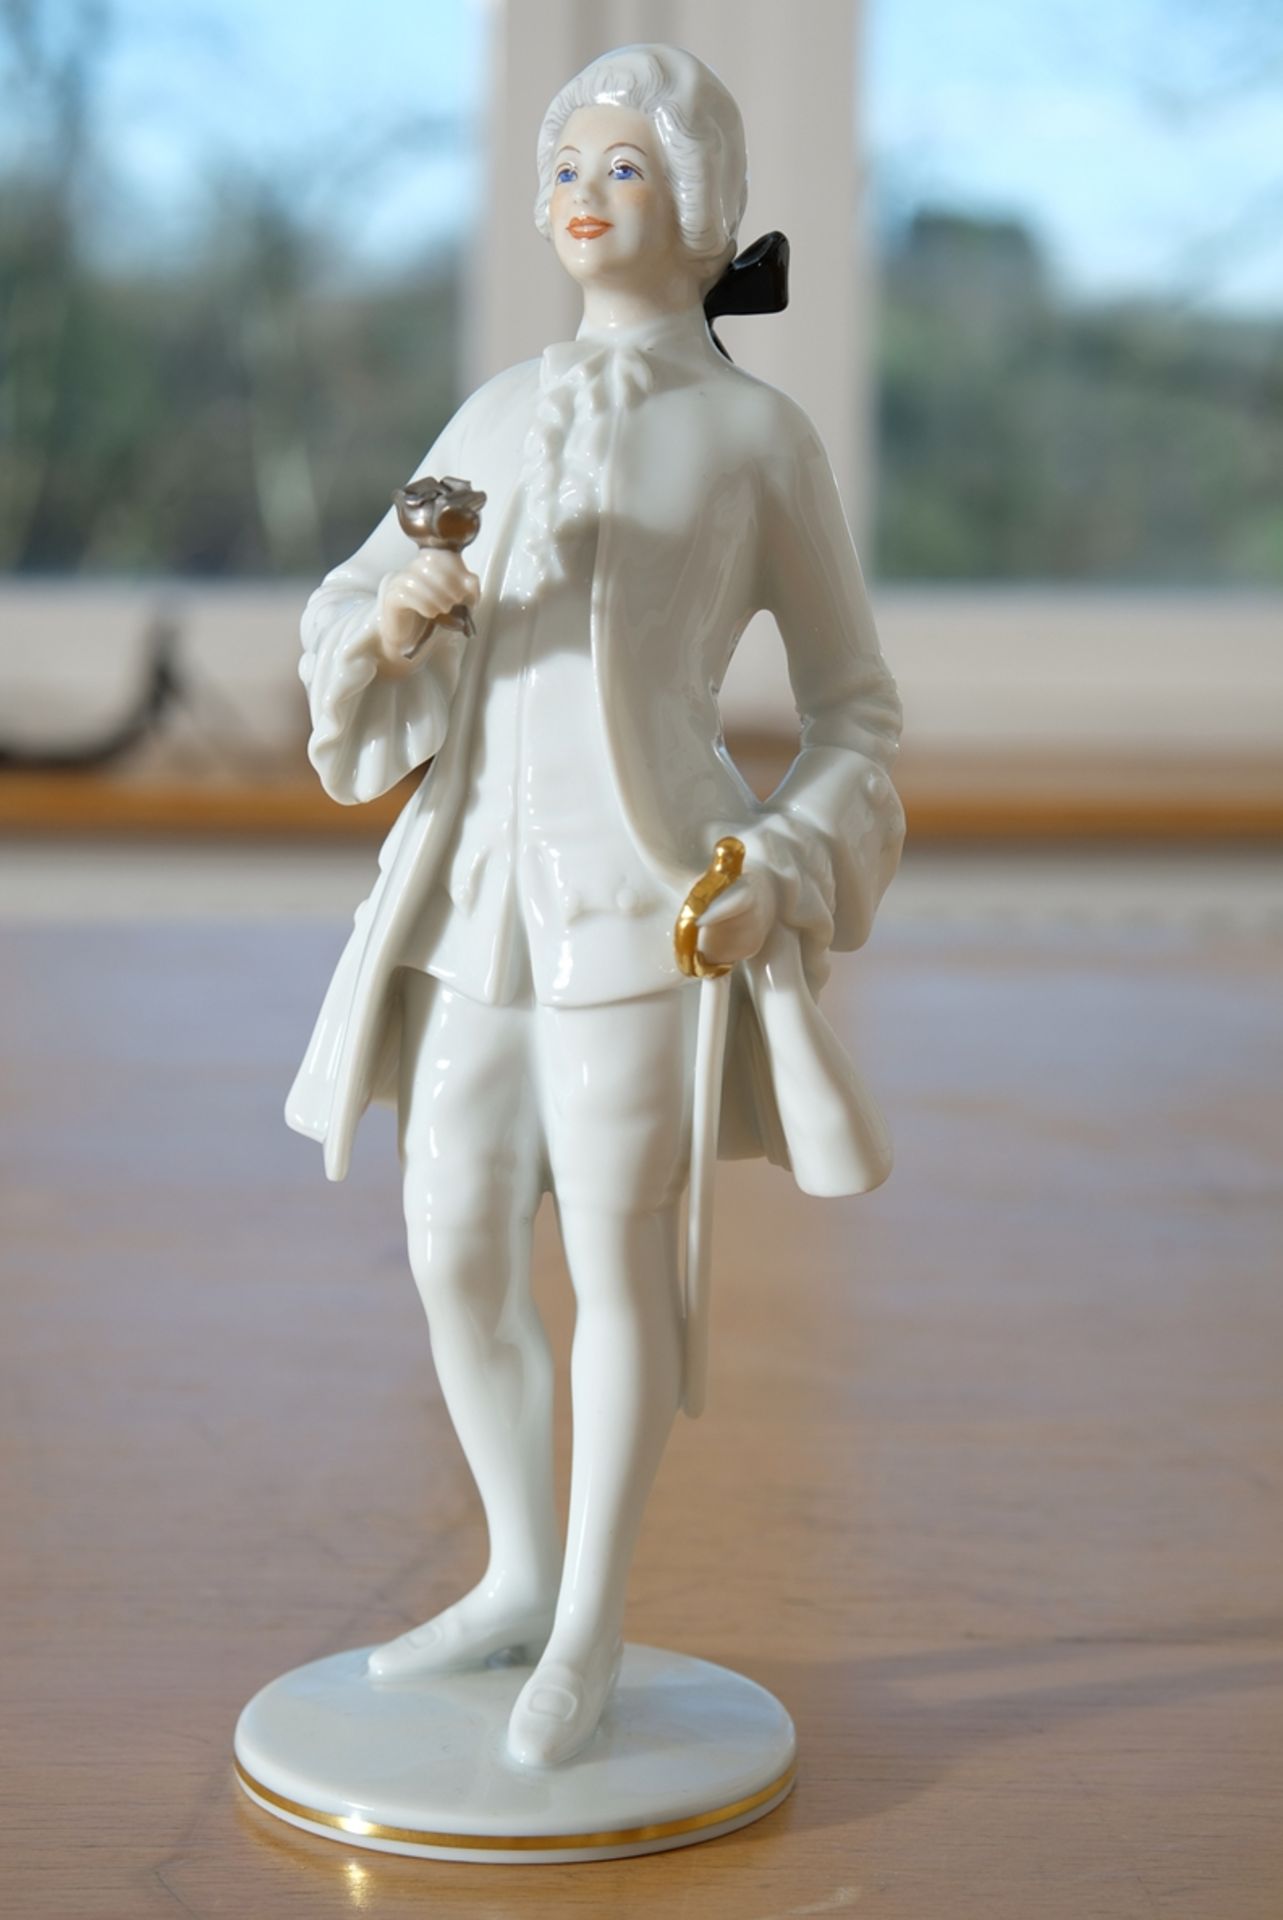 Porcelain figurine Rosenkavalier, Augarten Vienna, 22 cm high